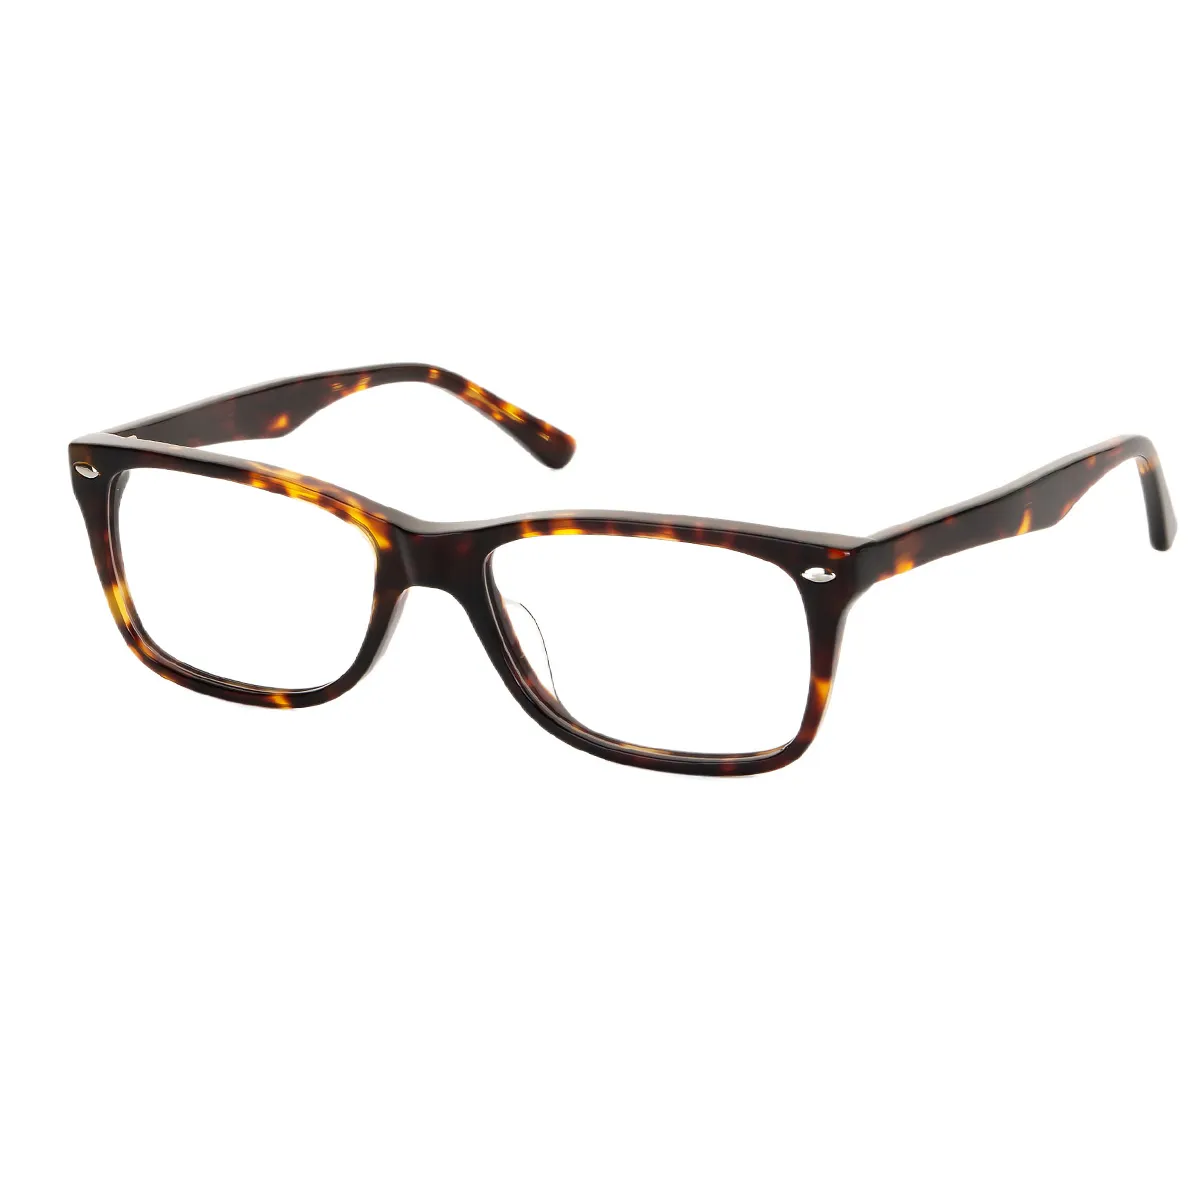 Ken - Square Tortoiseshell Glasses for Men & Women